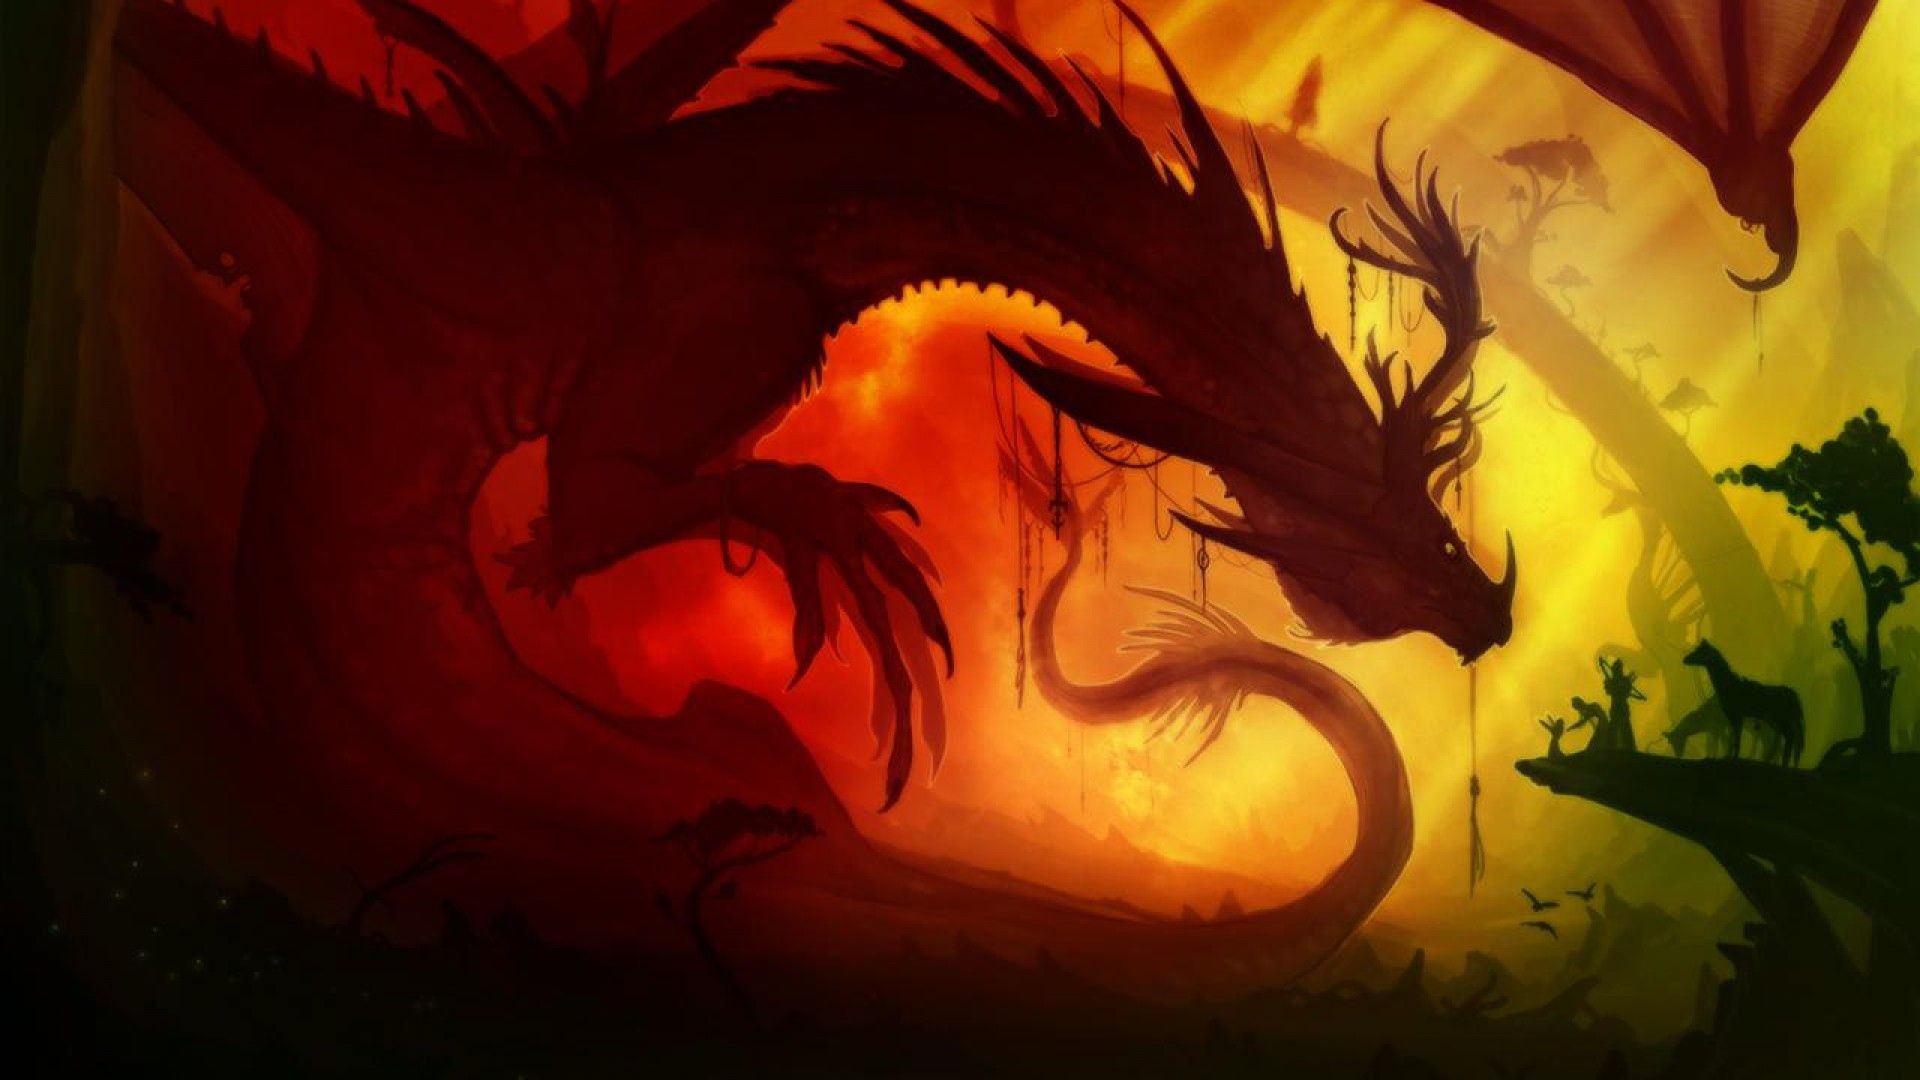 4k papier peint dragon,dragon,oeuvre de cg,personnage fictif,illustration,créature mythique